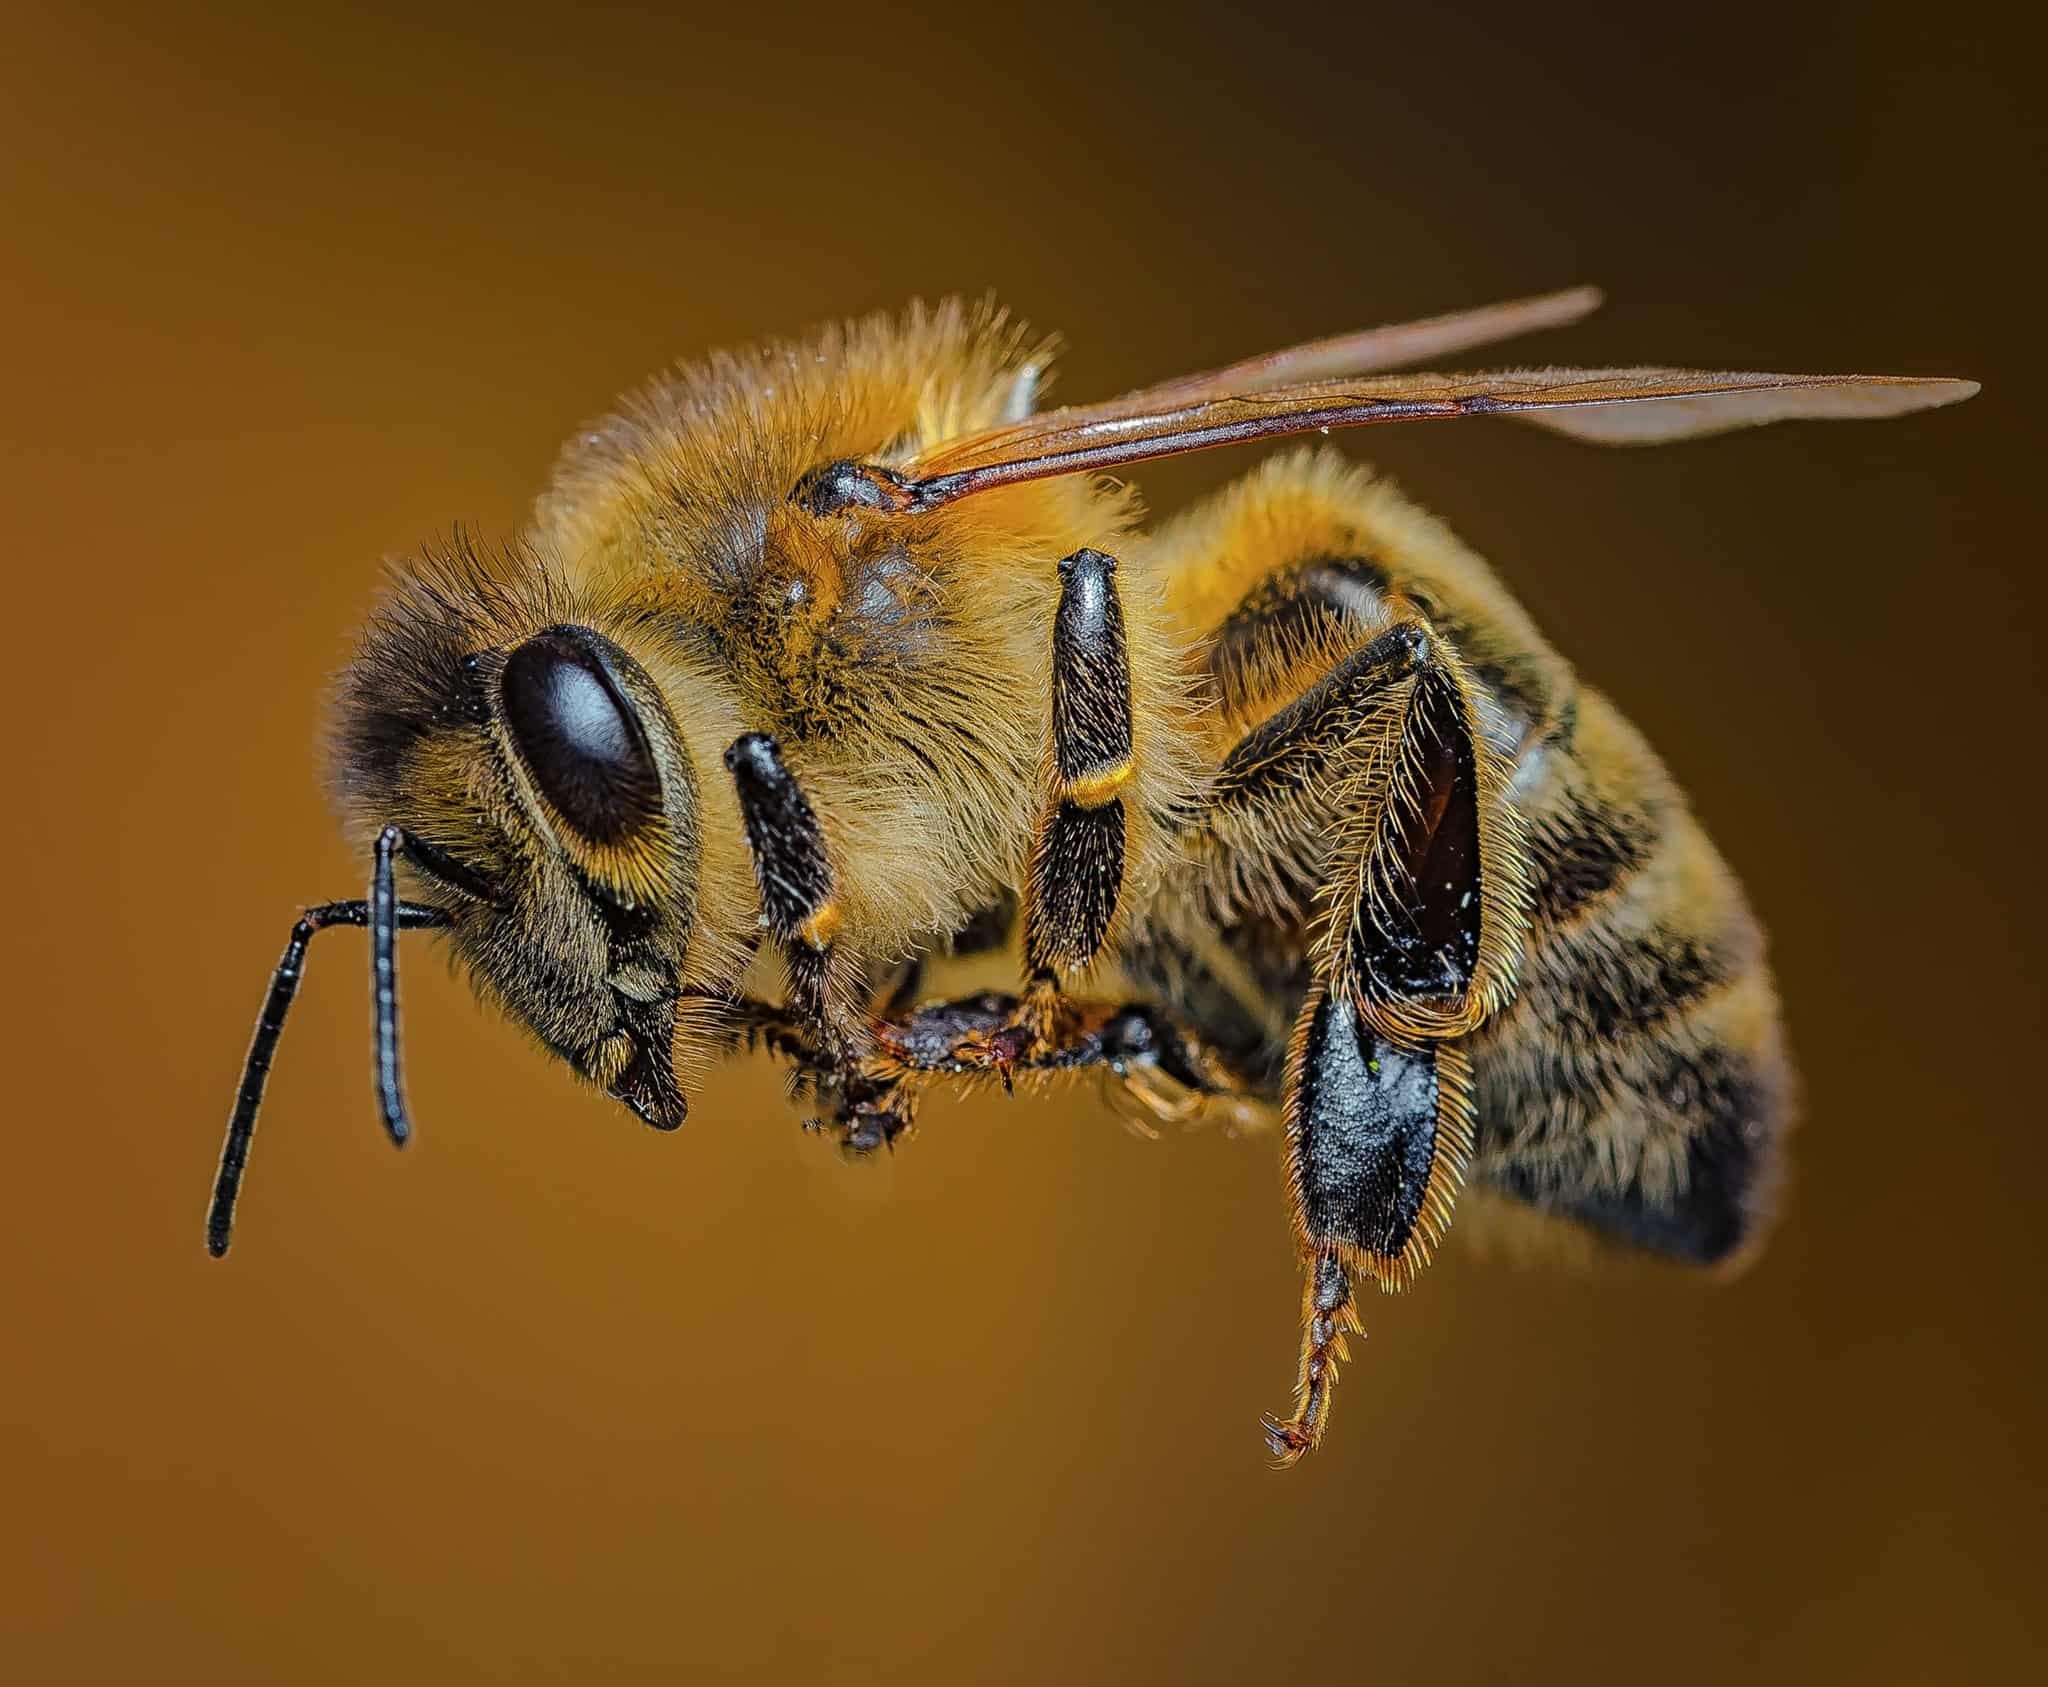 Carniolan Bees (Apis Mellifera Carnica)